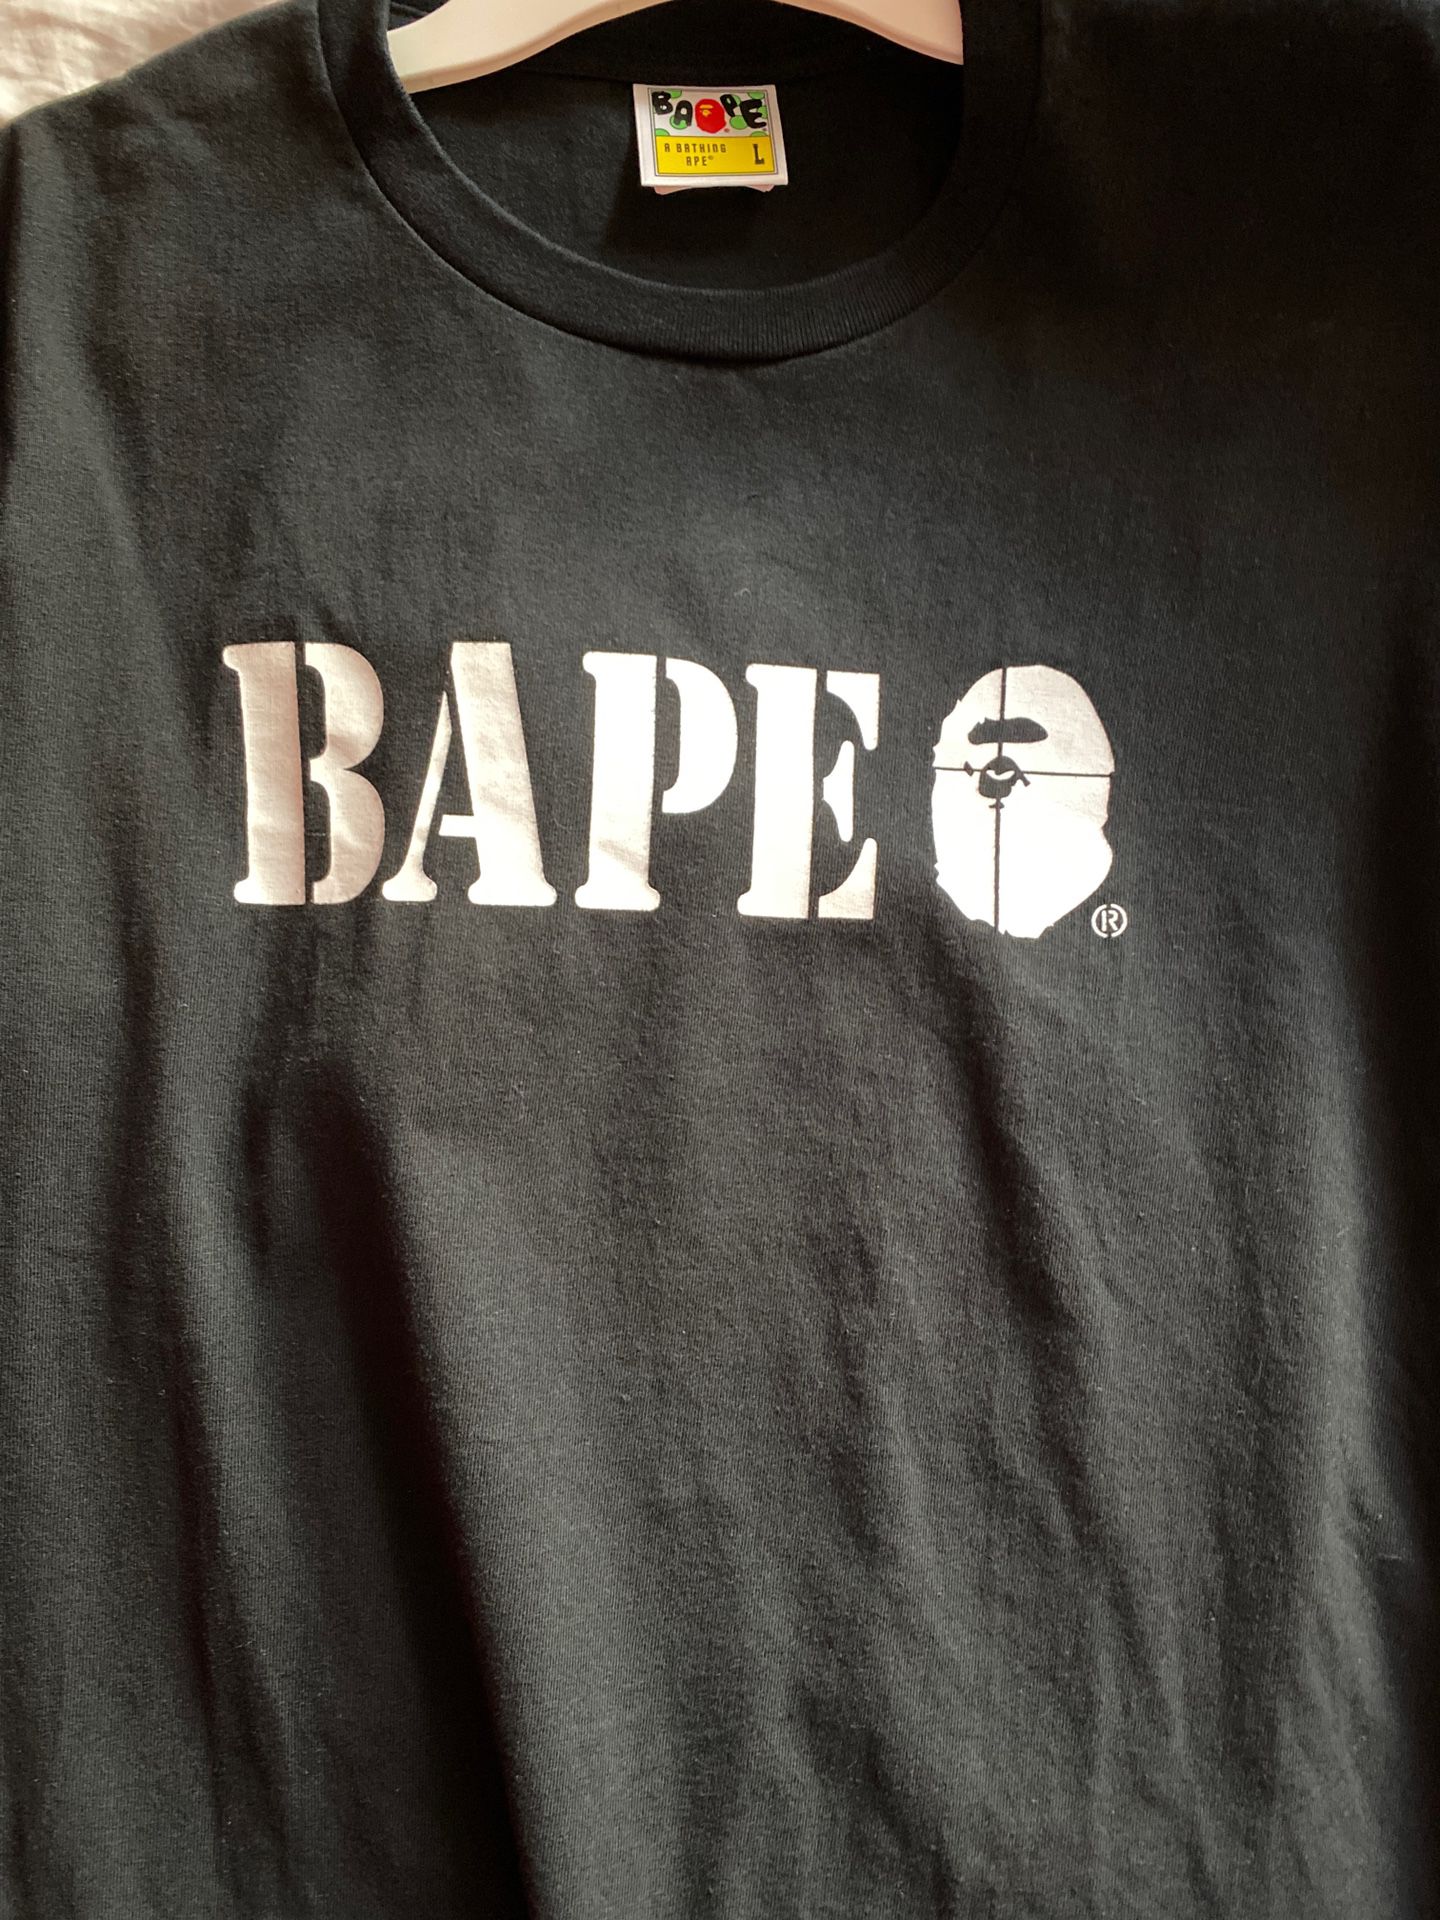 Bape Shirt from Japan